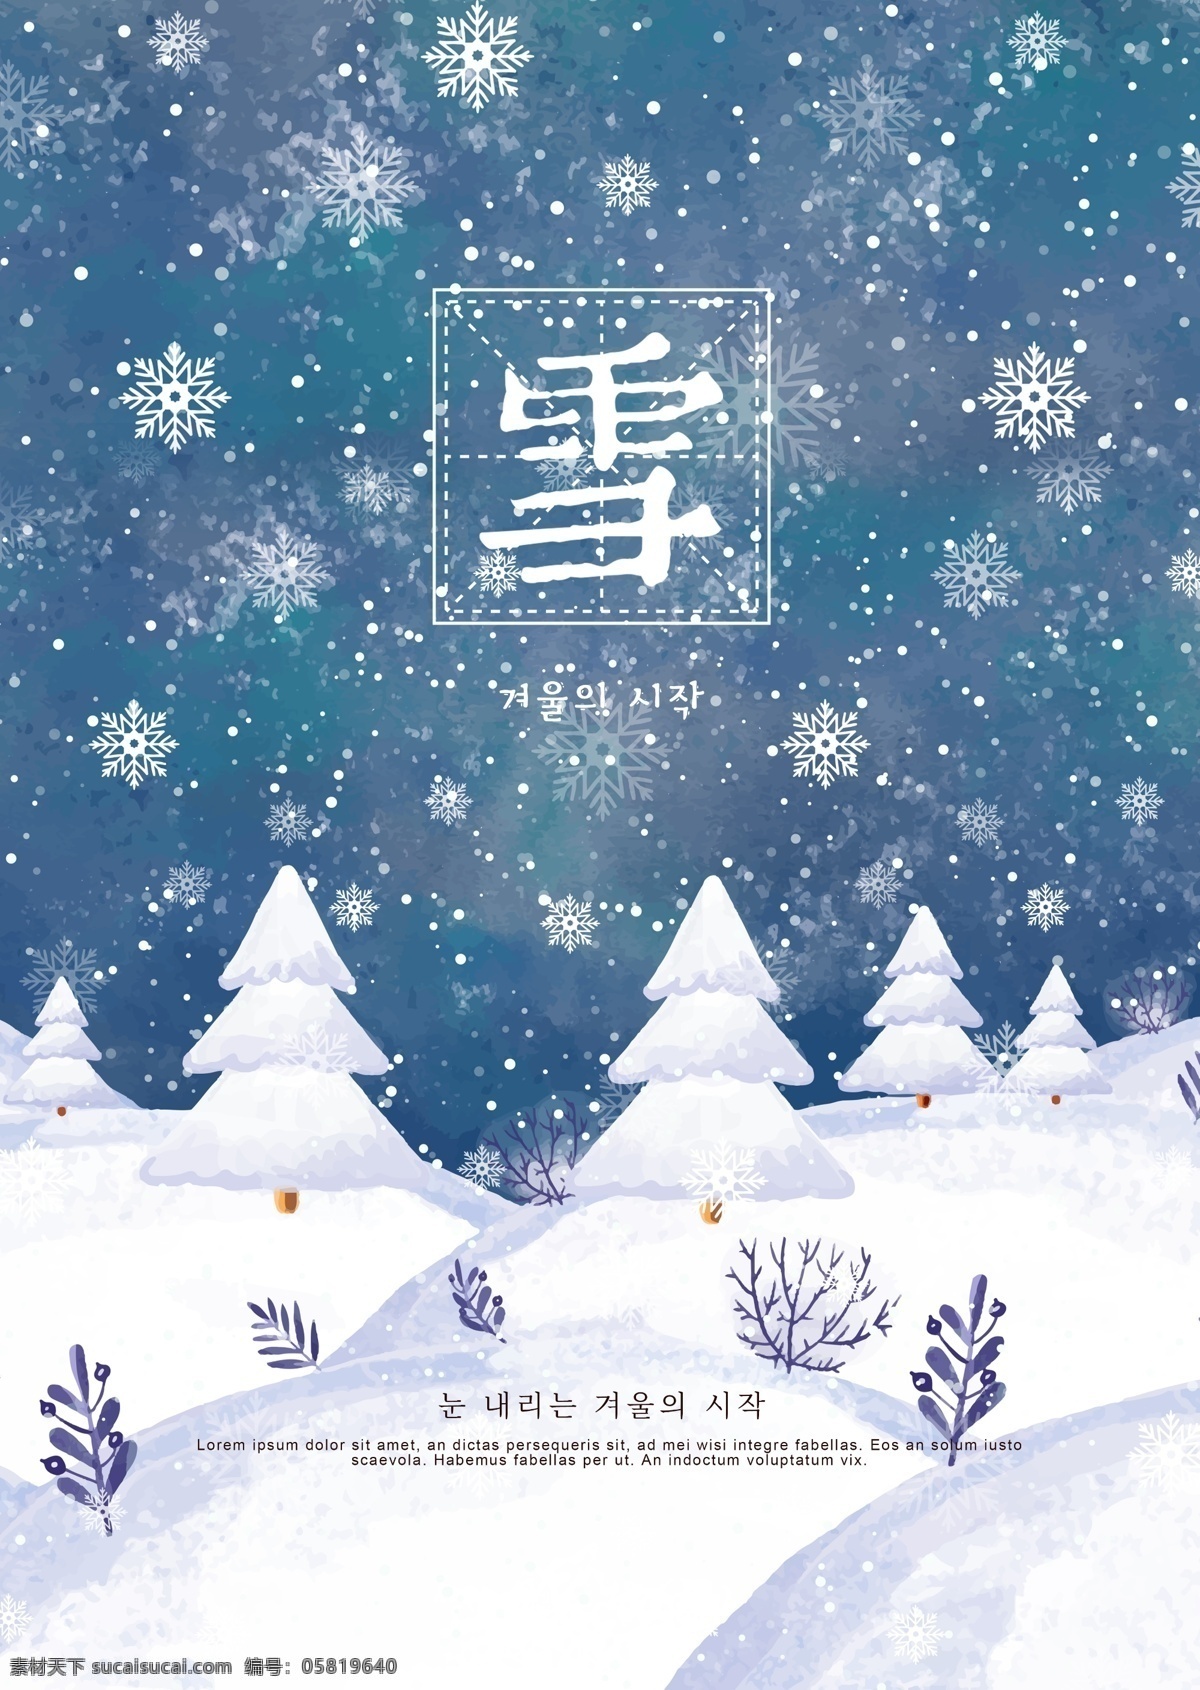 蓝色 卡通 冬天 雪景 海报 树木 天空 冬季 松树 灰色 白色 景观 墨 简单 山 空 花枝 遥远 中文